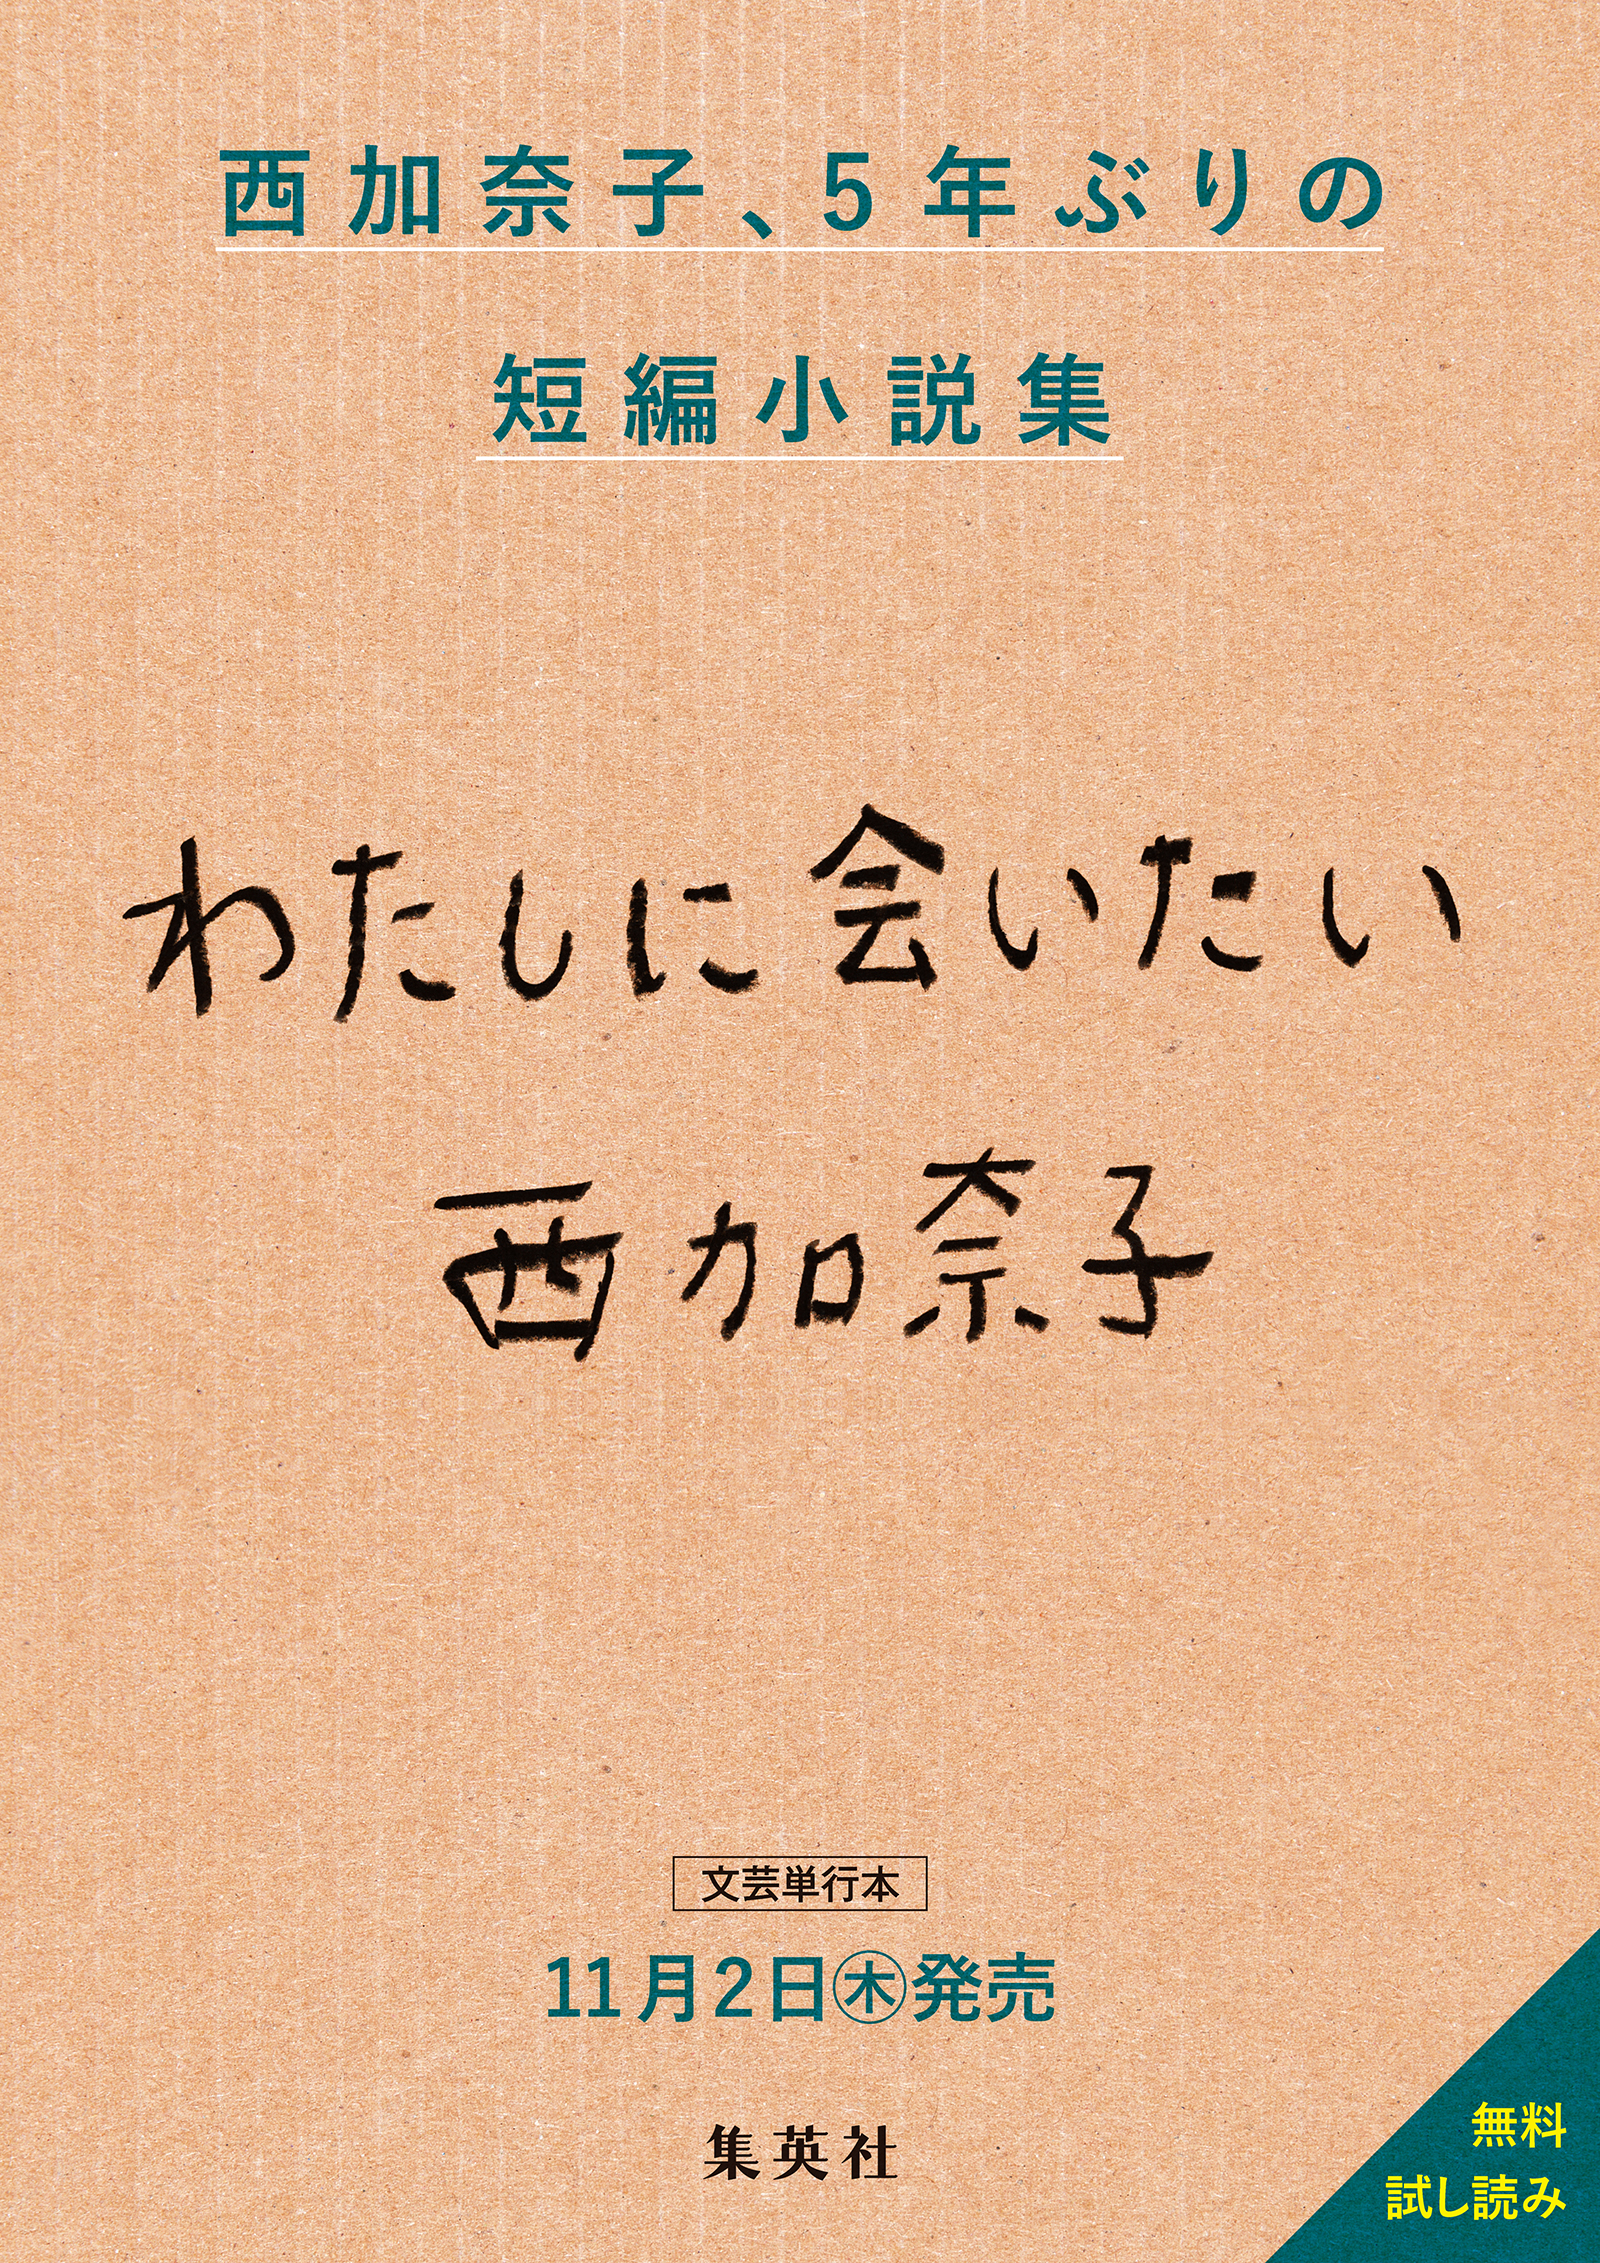 西加奈子最新短編小説集『わたしに会いたい』無料試し読み - 西加奈子